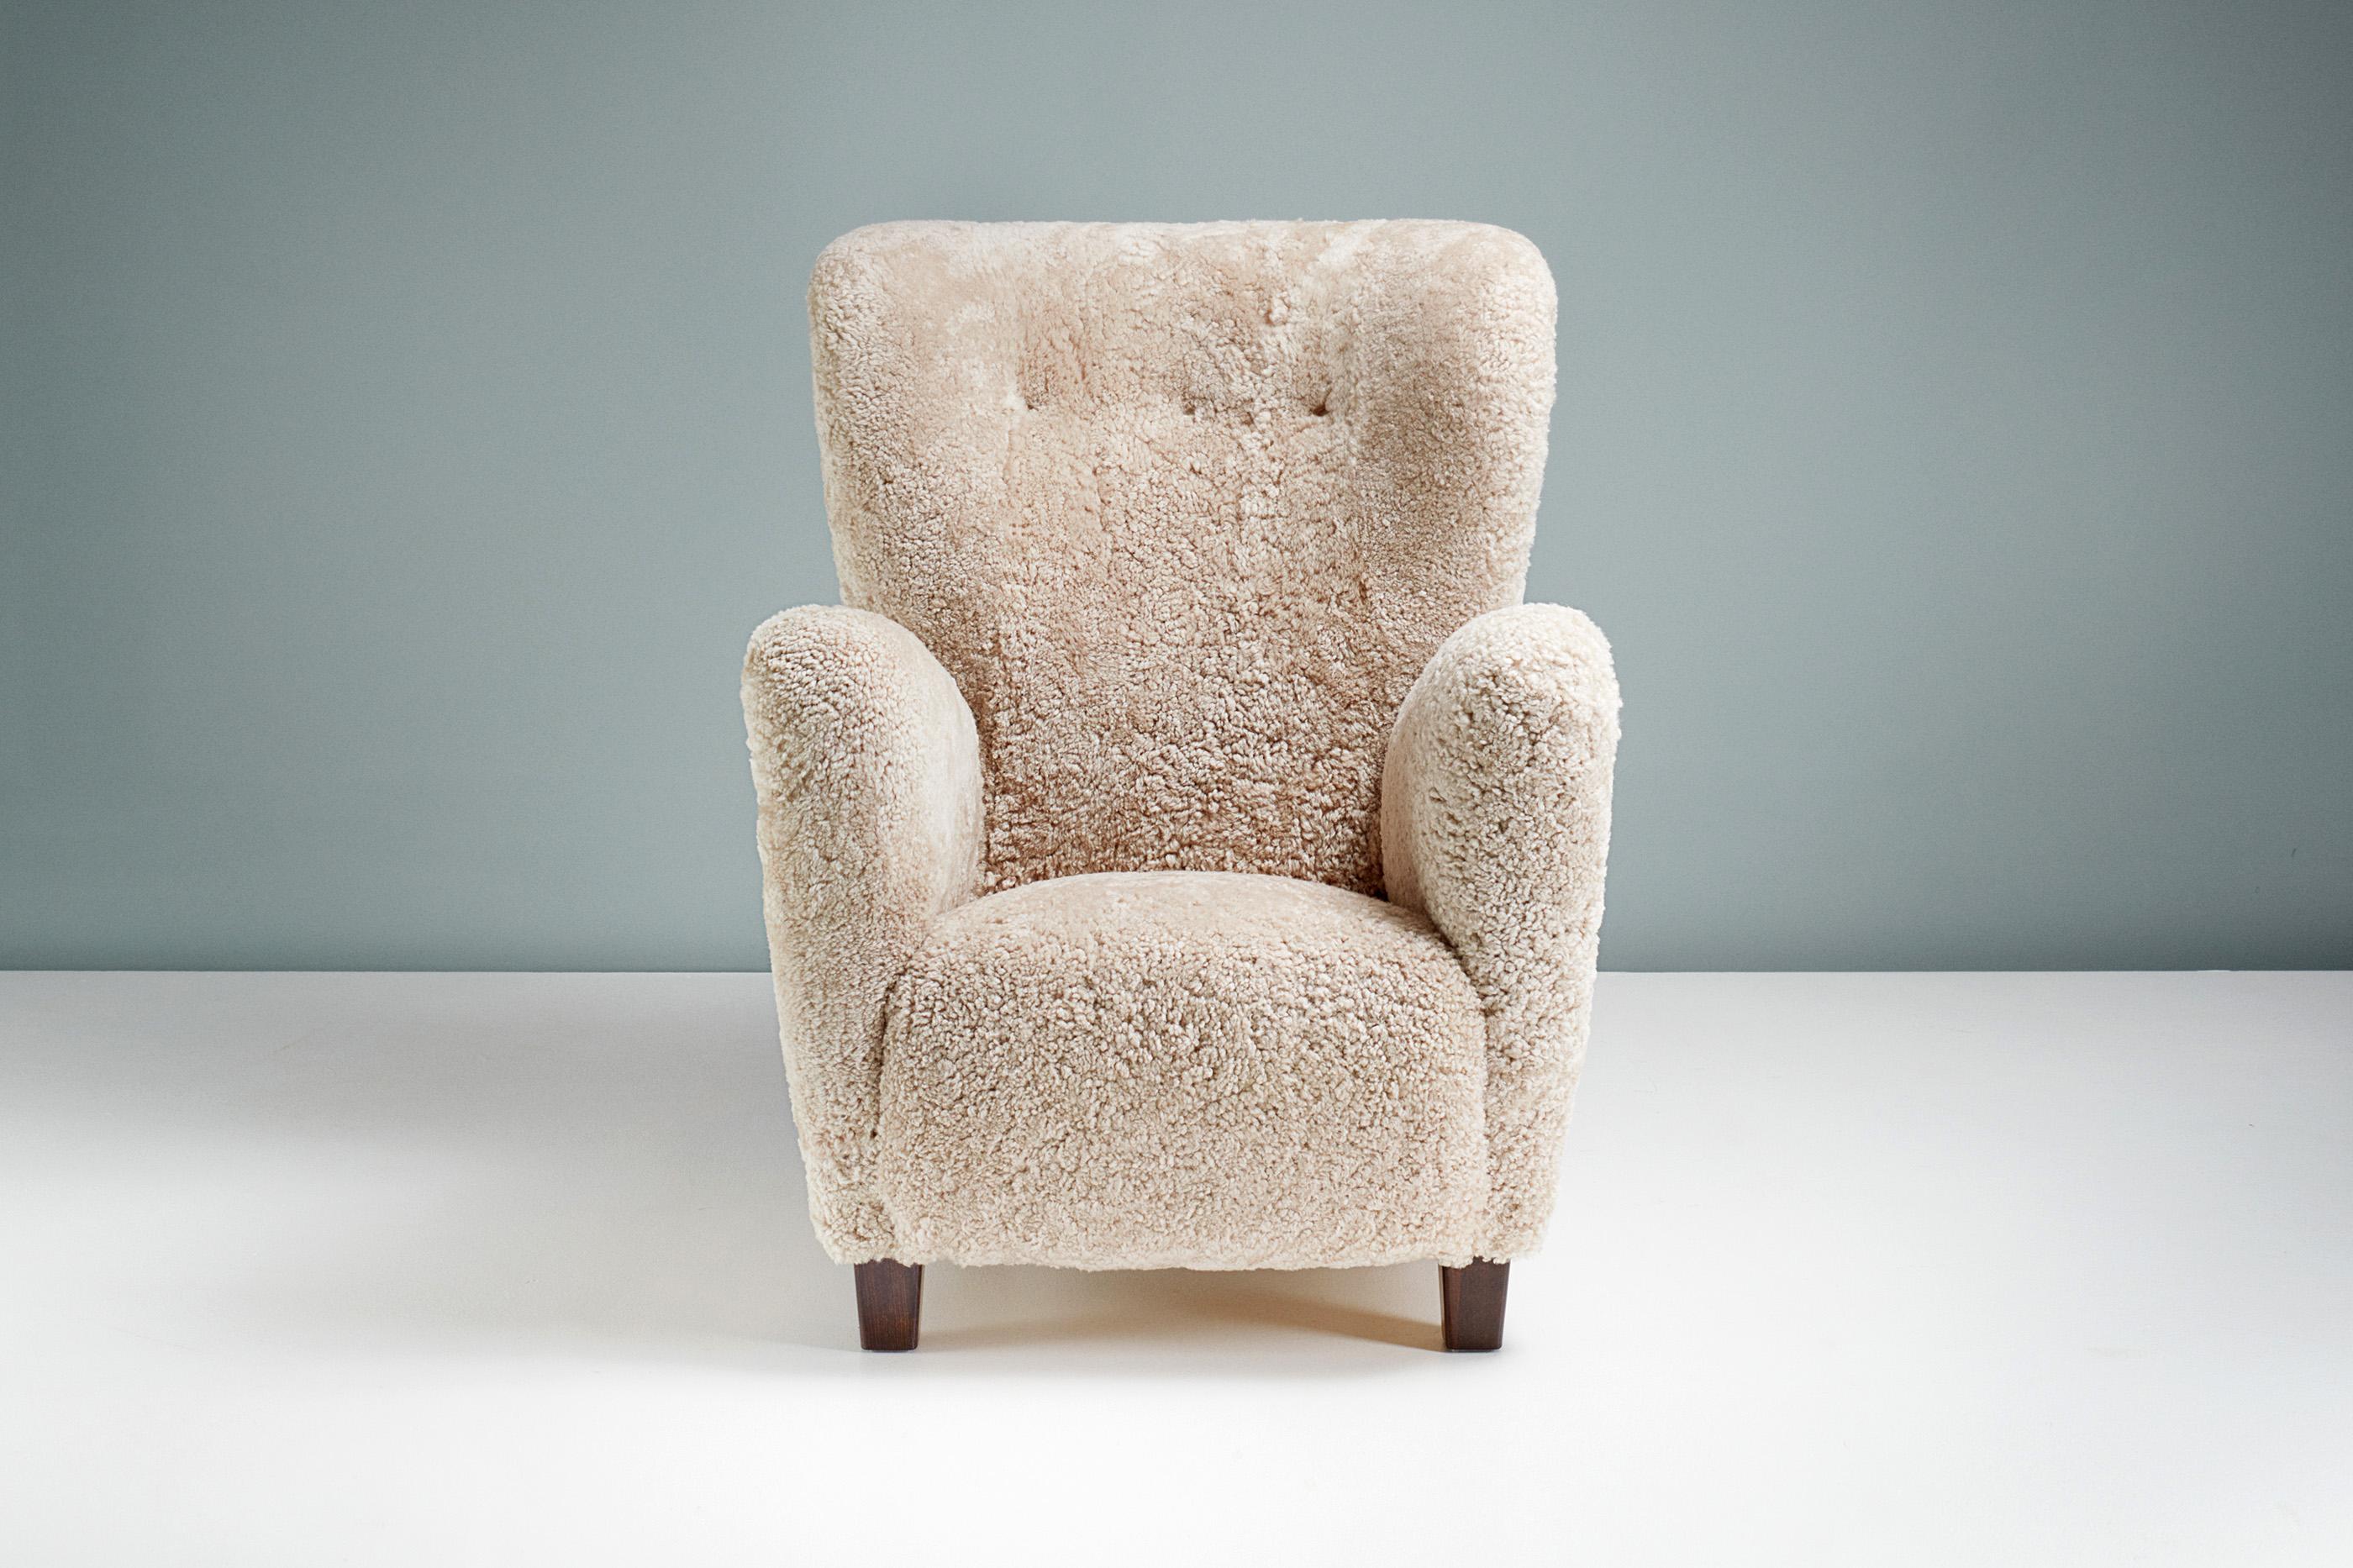 Fauteuil en peau de mouton d'ébéniste danois, vers 1940.

Chaise longue à haut dossier fabriquée par un ébéniste danois dans les années 1940. Il est doté d'un dossier à oreilles incurvé et de pieds en hêtre teinté. La chaise a été entièrement remise